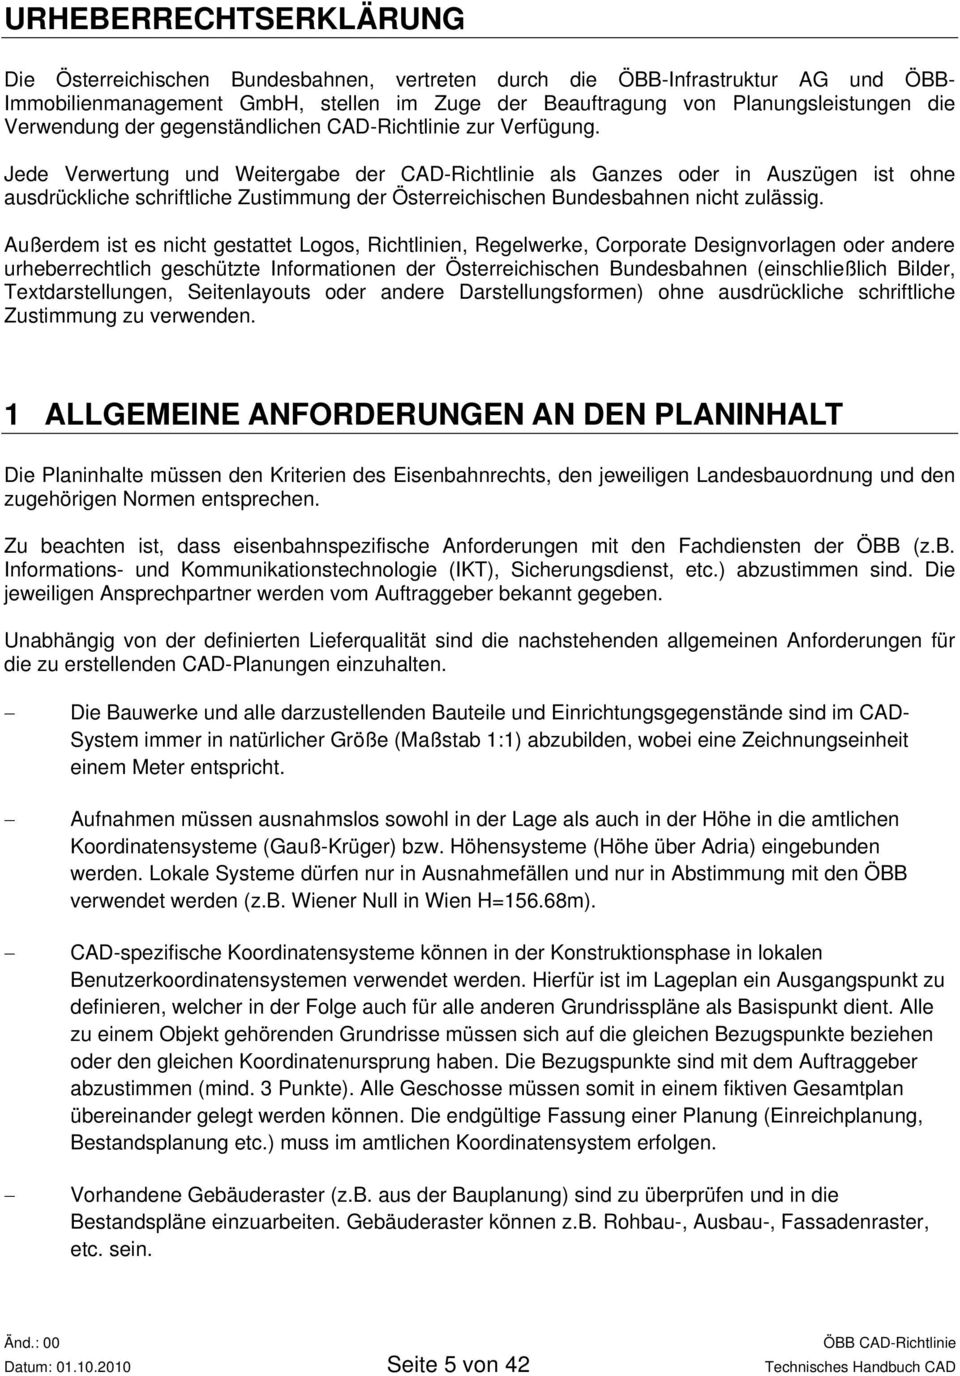 Jede Verwertung und Weitergabe der CAD-Richtlinie als Ganzes oder in Auszügen ist ohne ausdrückliche schriftliche Zustimmung der Österreichischen Bundesbahnen nicht zulässig.